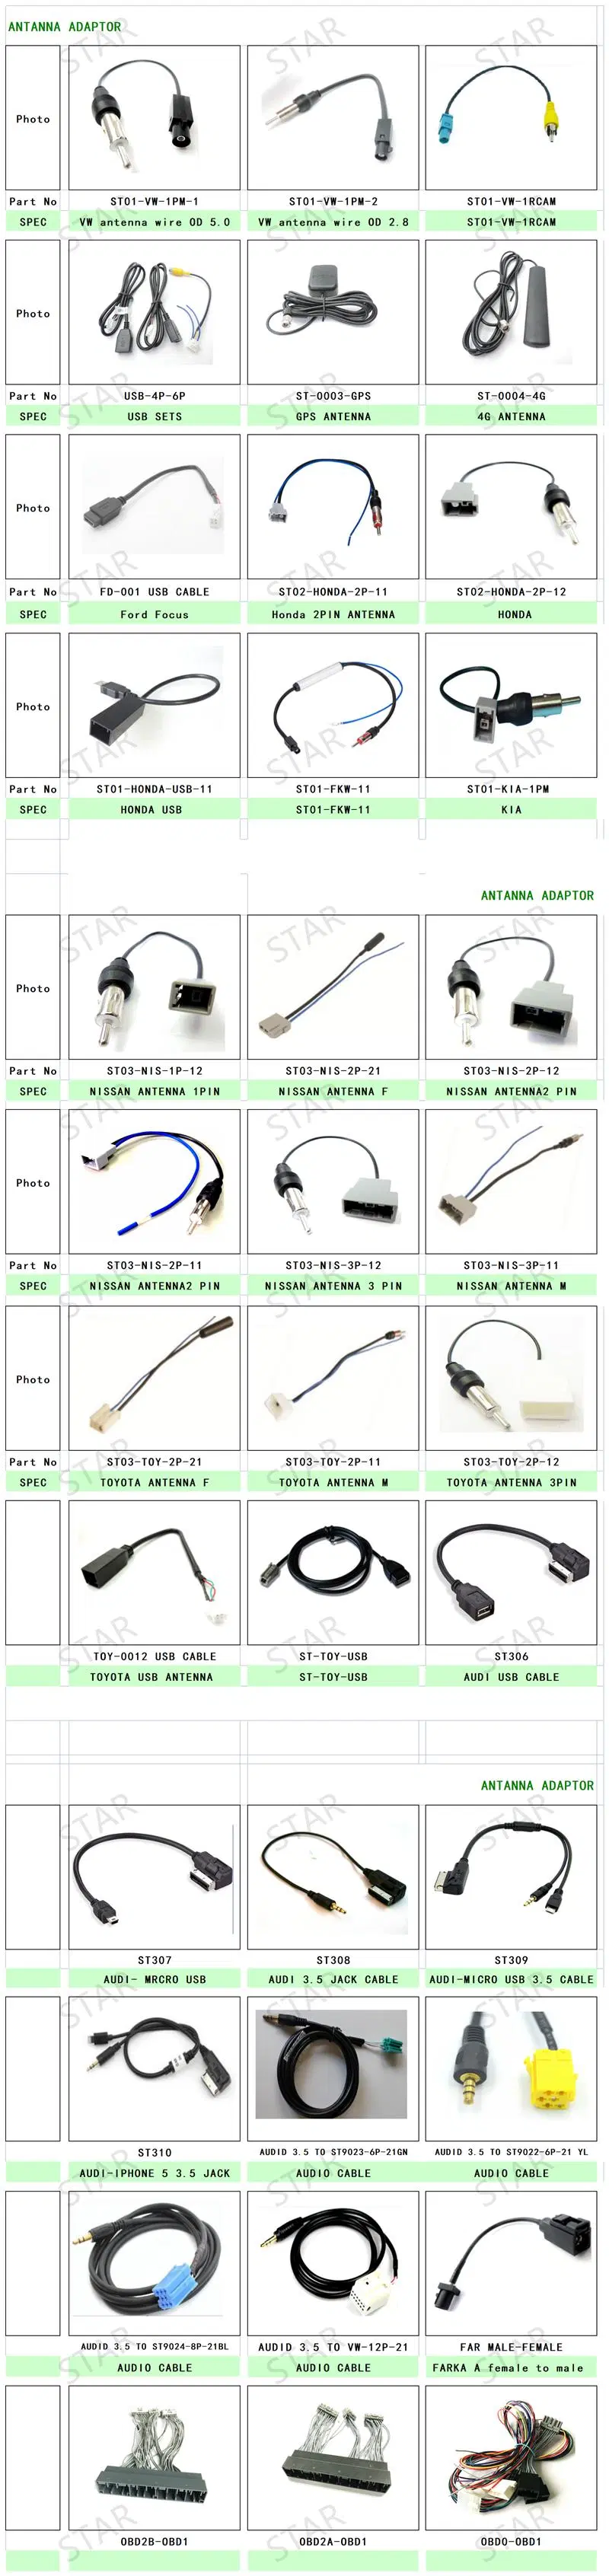 OBD0 to OBD1 ECU Adaptor Connector Auto Car Wire Harness Cable for Crx Civic Prelude Acura Integra B17 B16 B18 B20